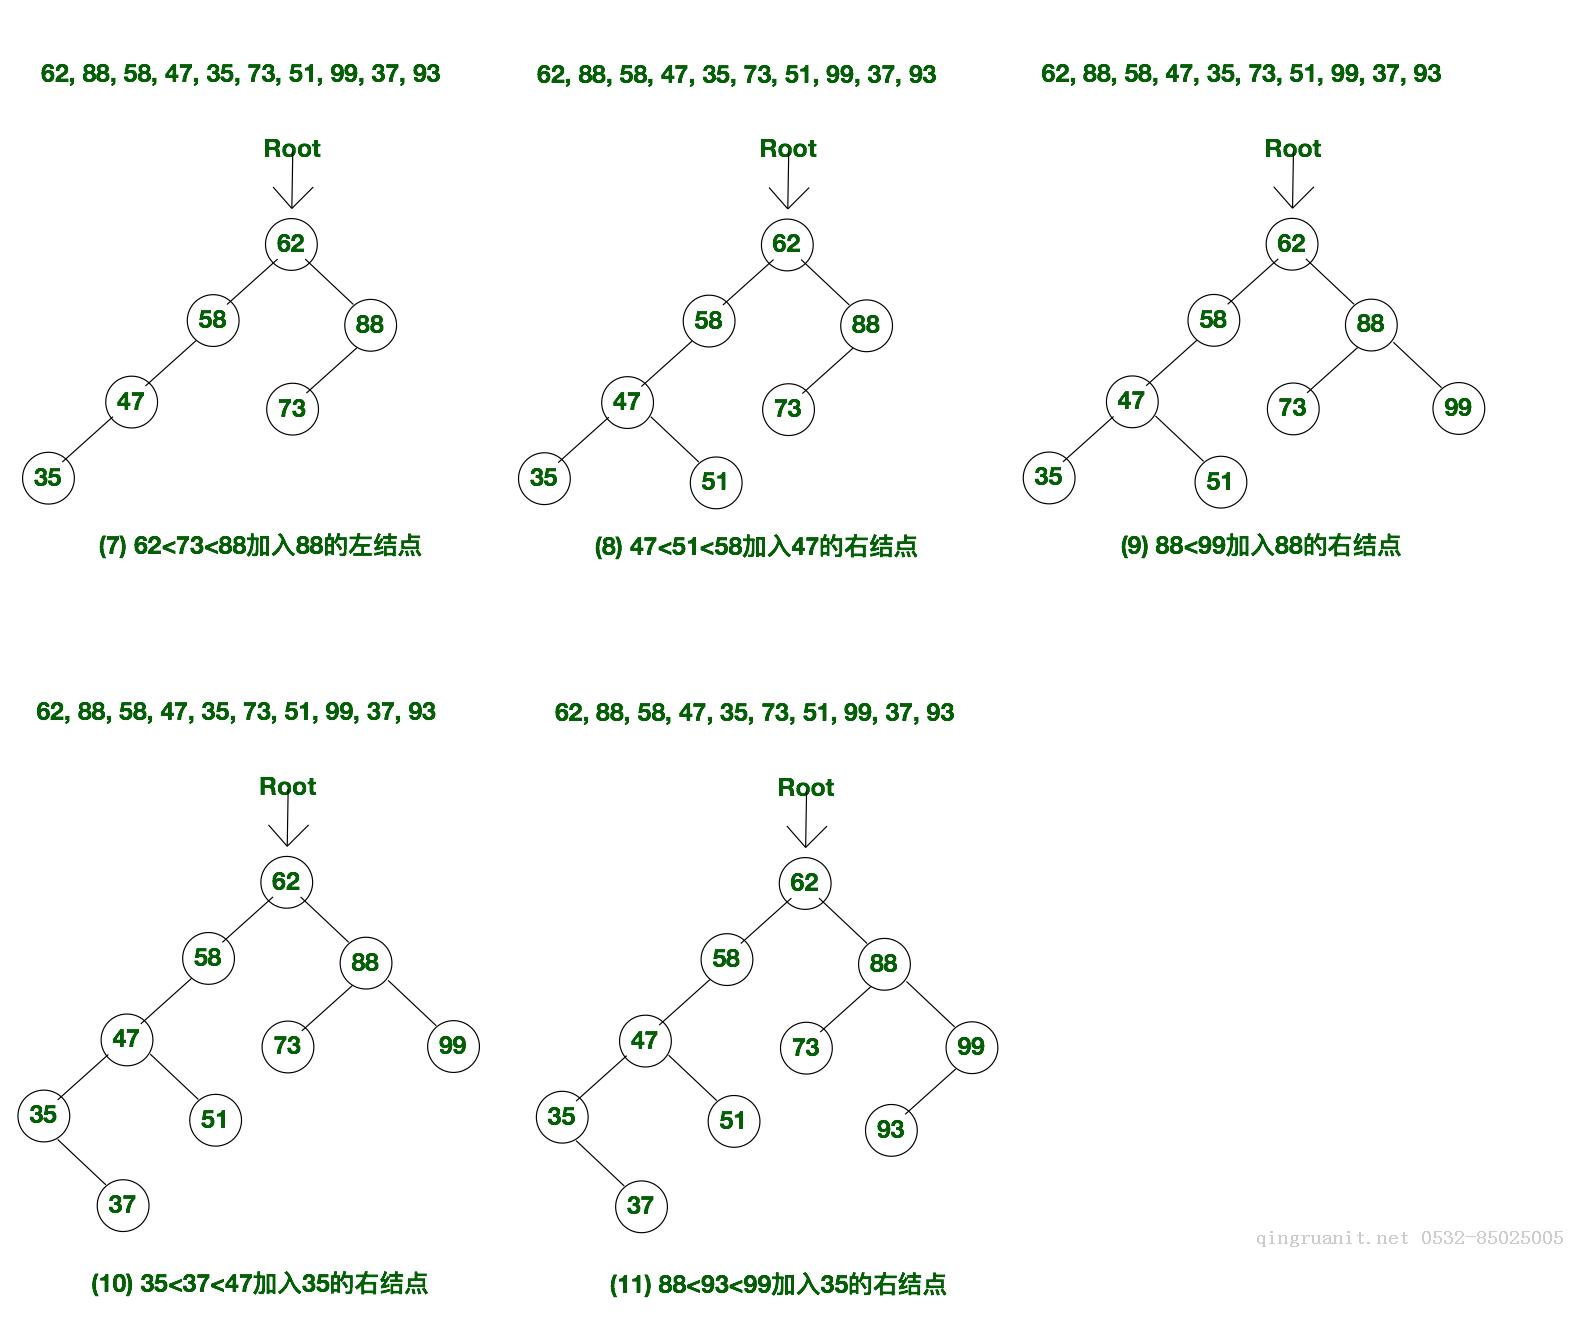 C++实现二叉排序树